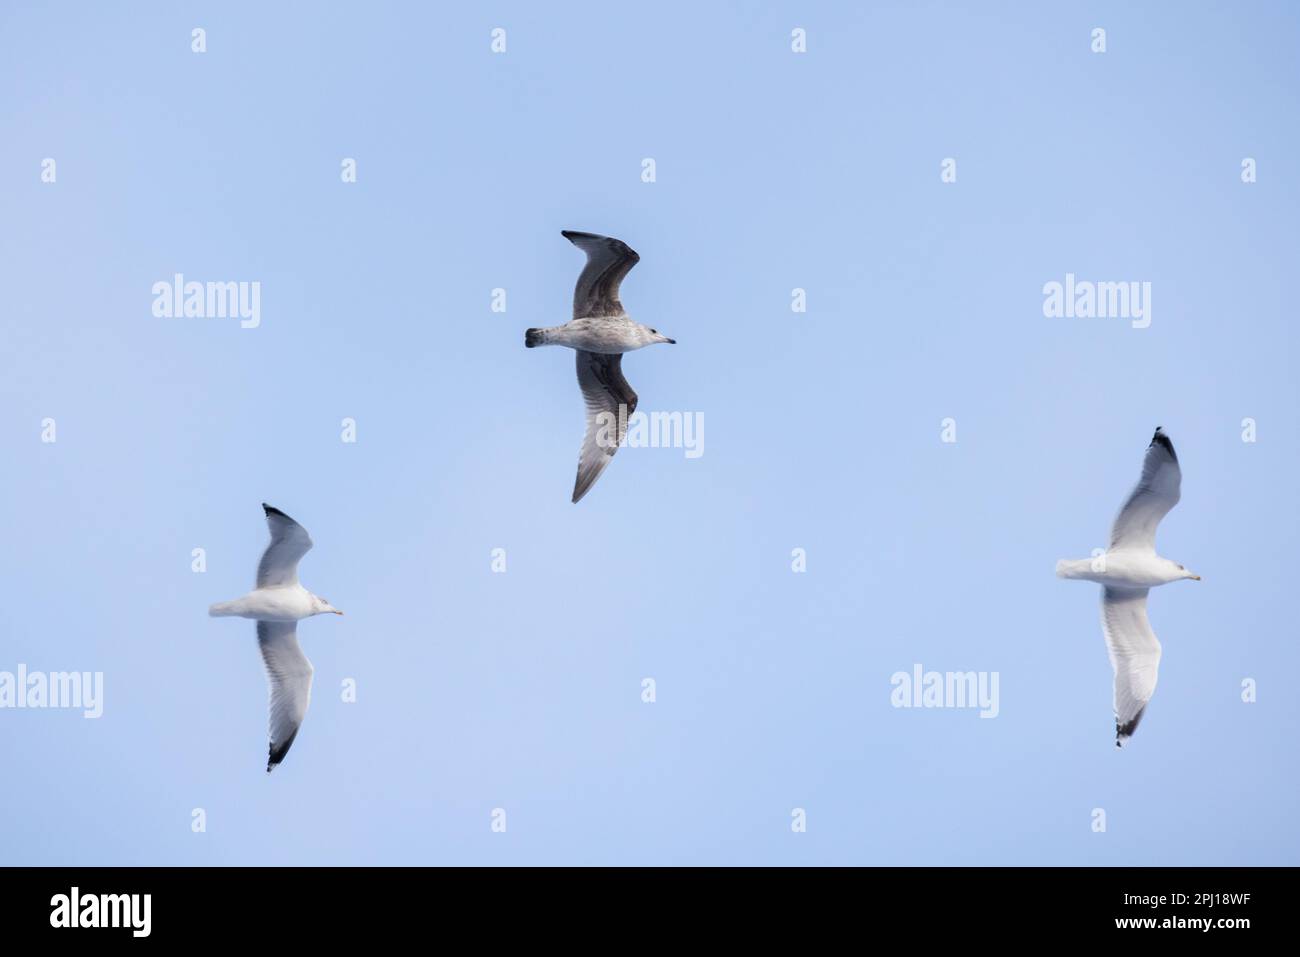 Tre gabbiani adulti con fatturazione ad anello volano in cielo blu di giorno Foto Stock